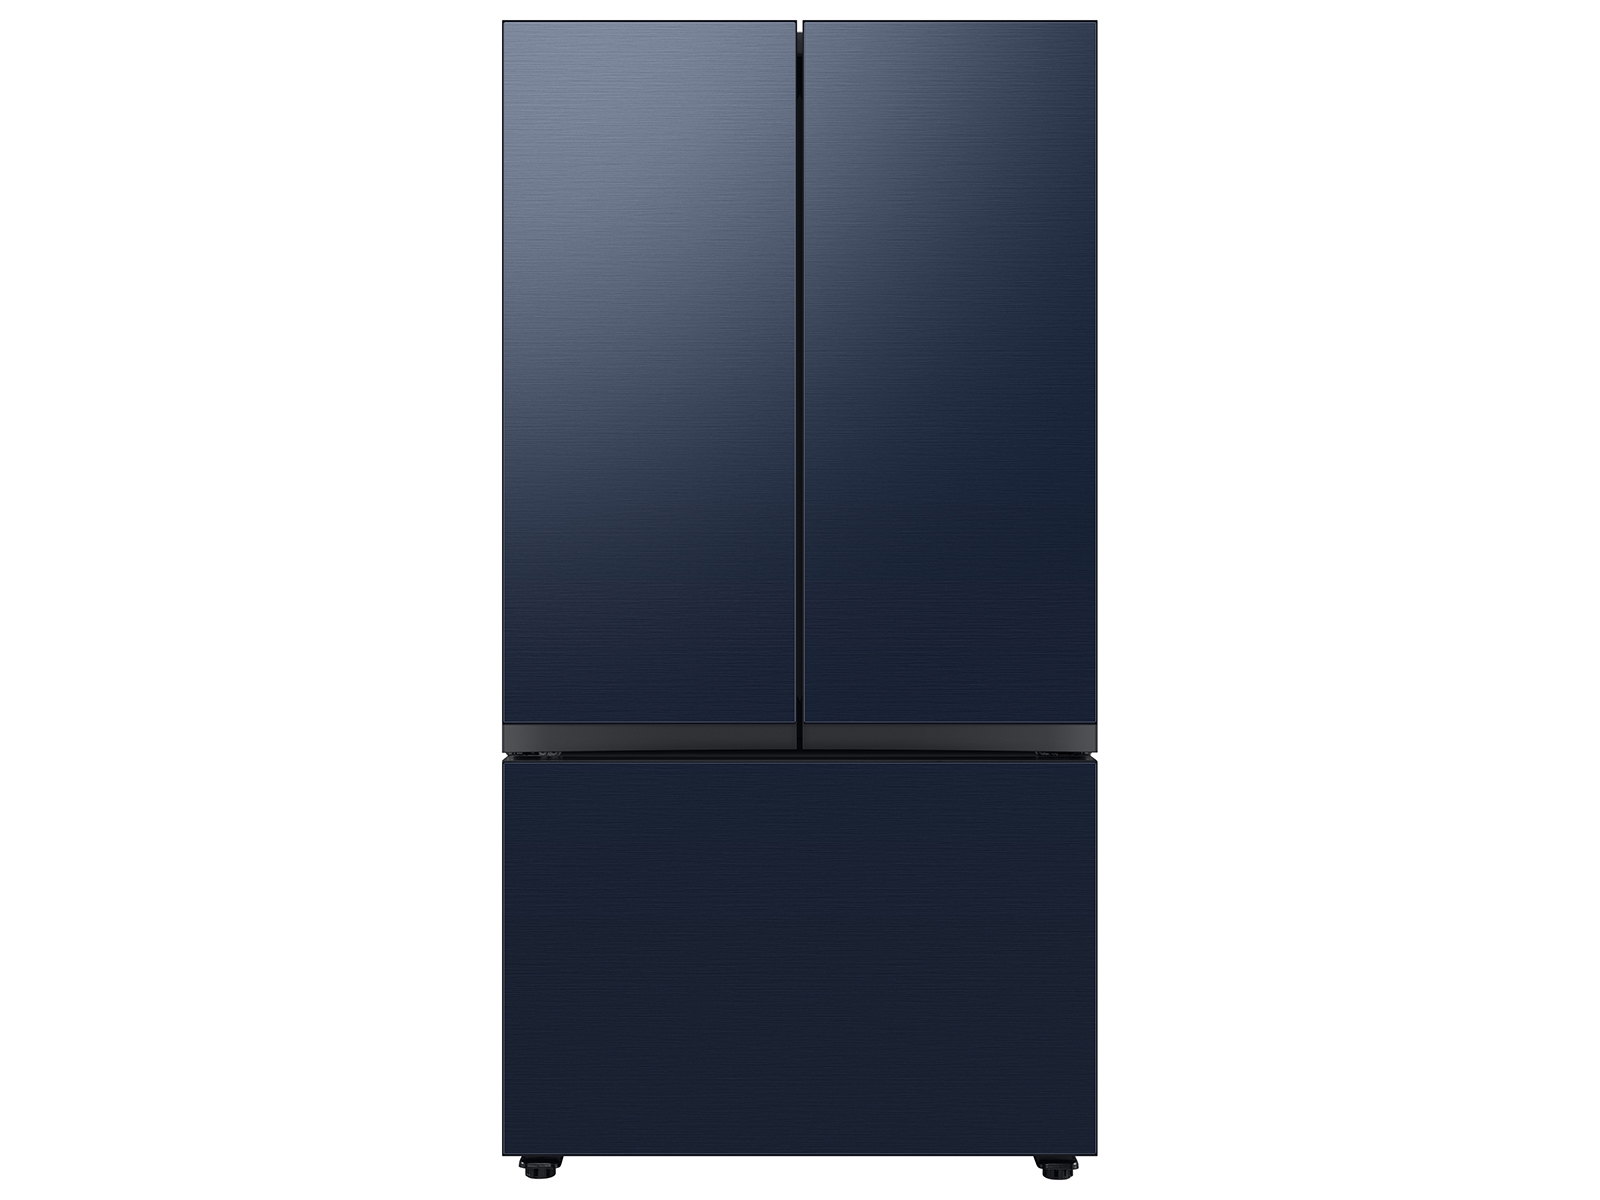 Bespoke 3-Door French Door Refrigerator (30 cu. ft.) with Beverage Center&trade; in Navy Steel